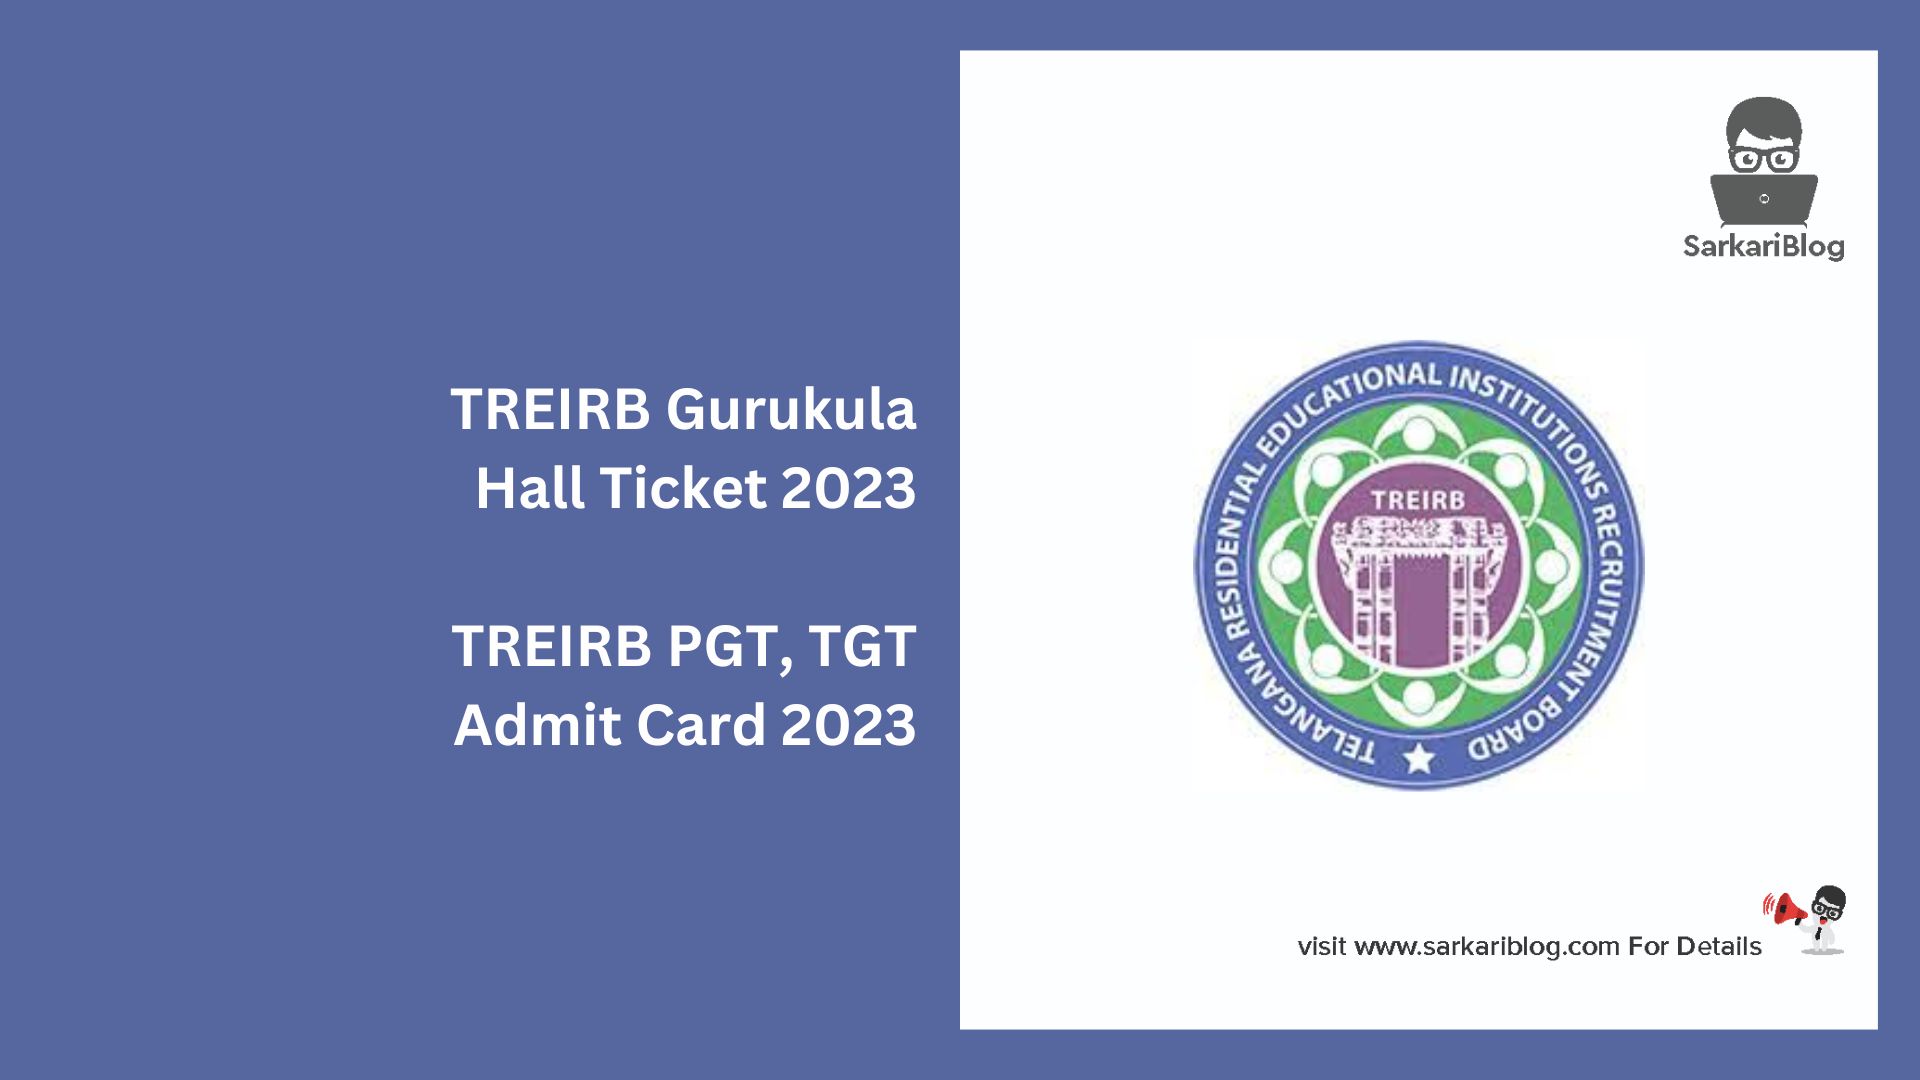 TREIRB Gurukula Hall Ticket 2023